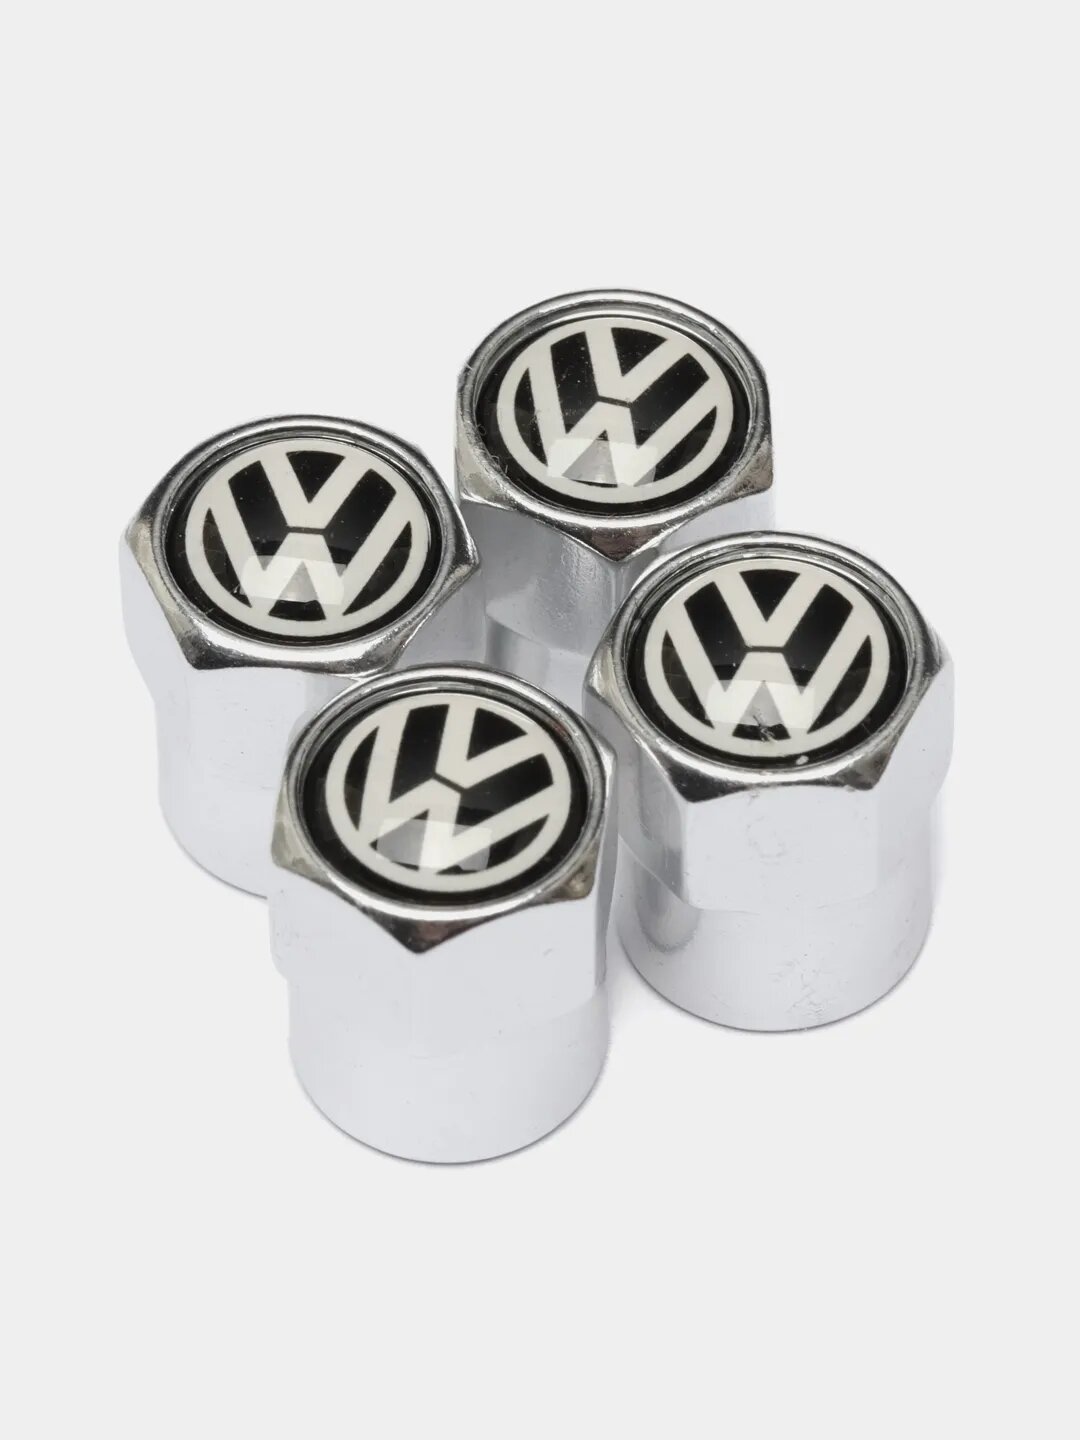 Колпачки для колес на ниппель авто с логотипом Volkswagen, 4 штуки, серебристые